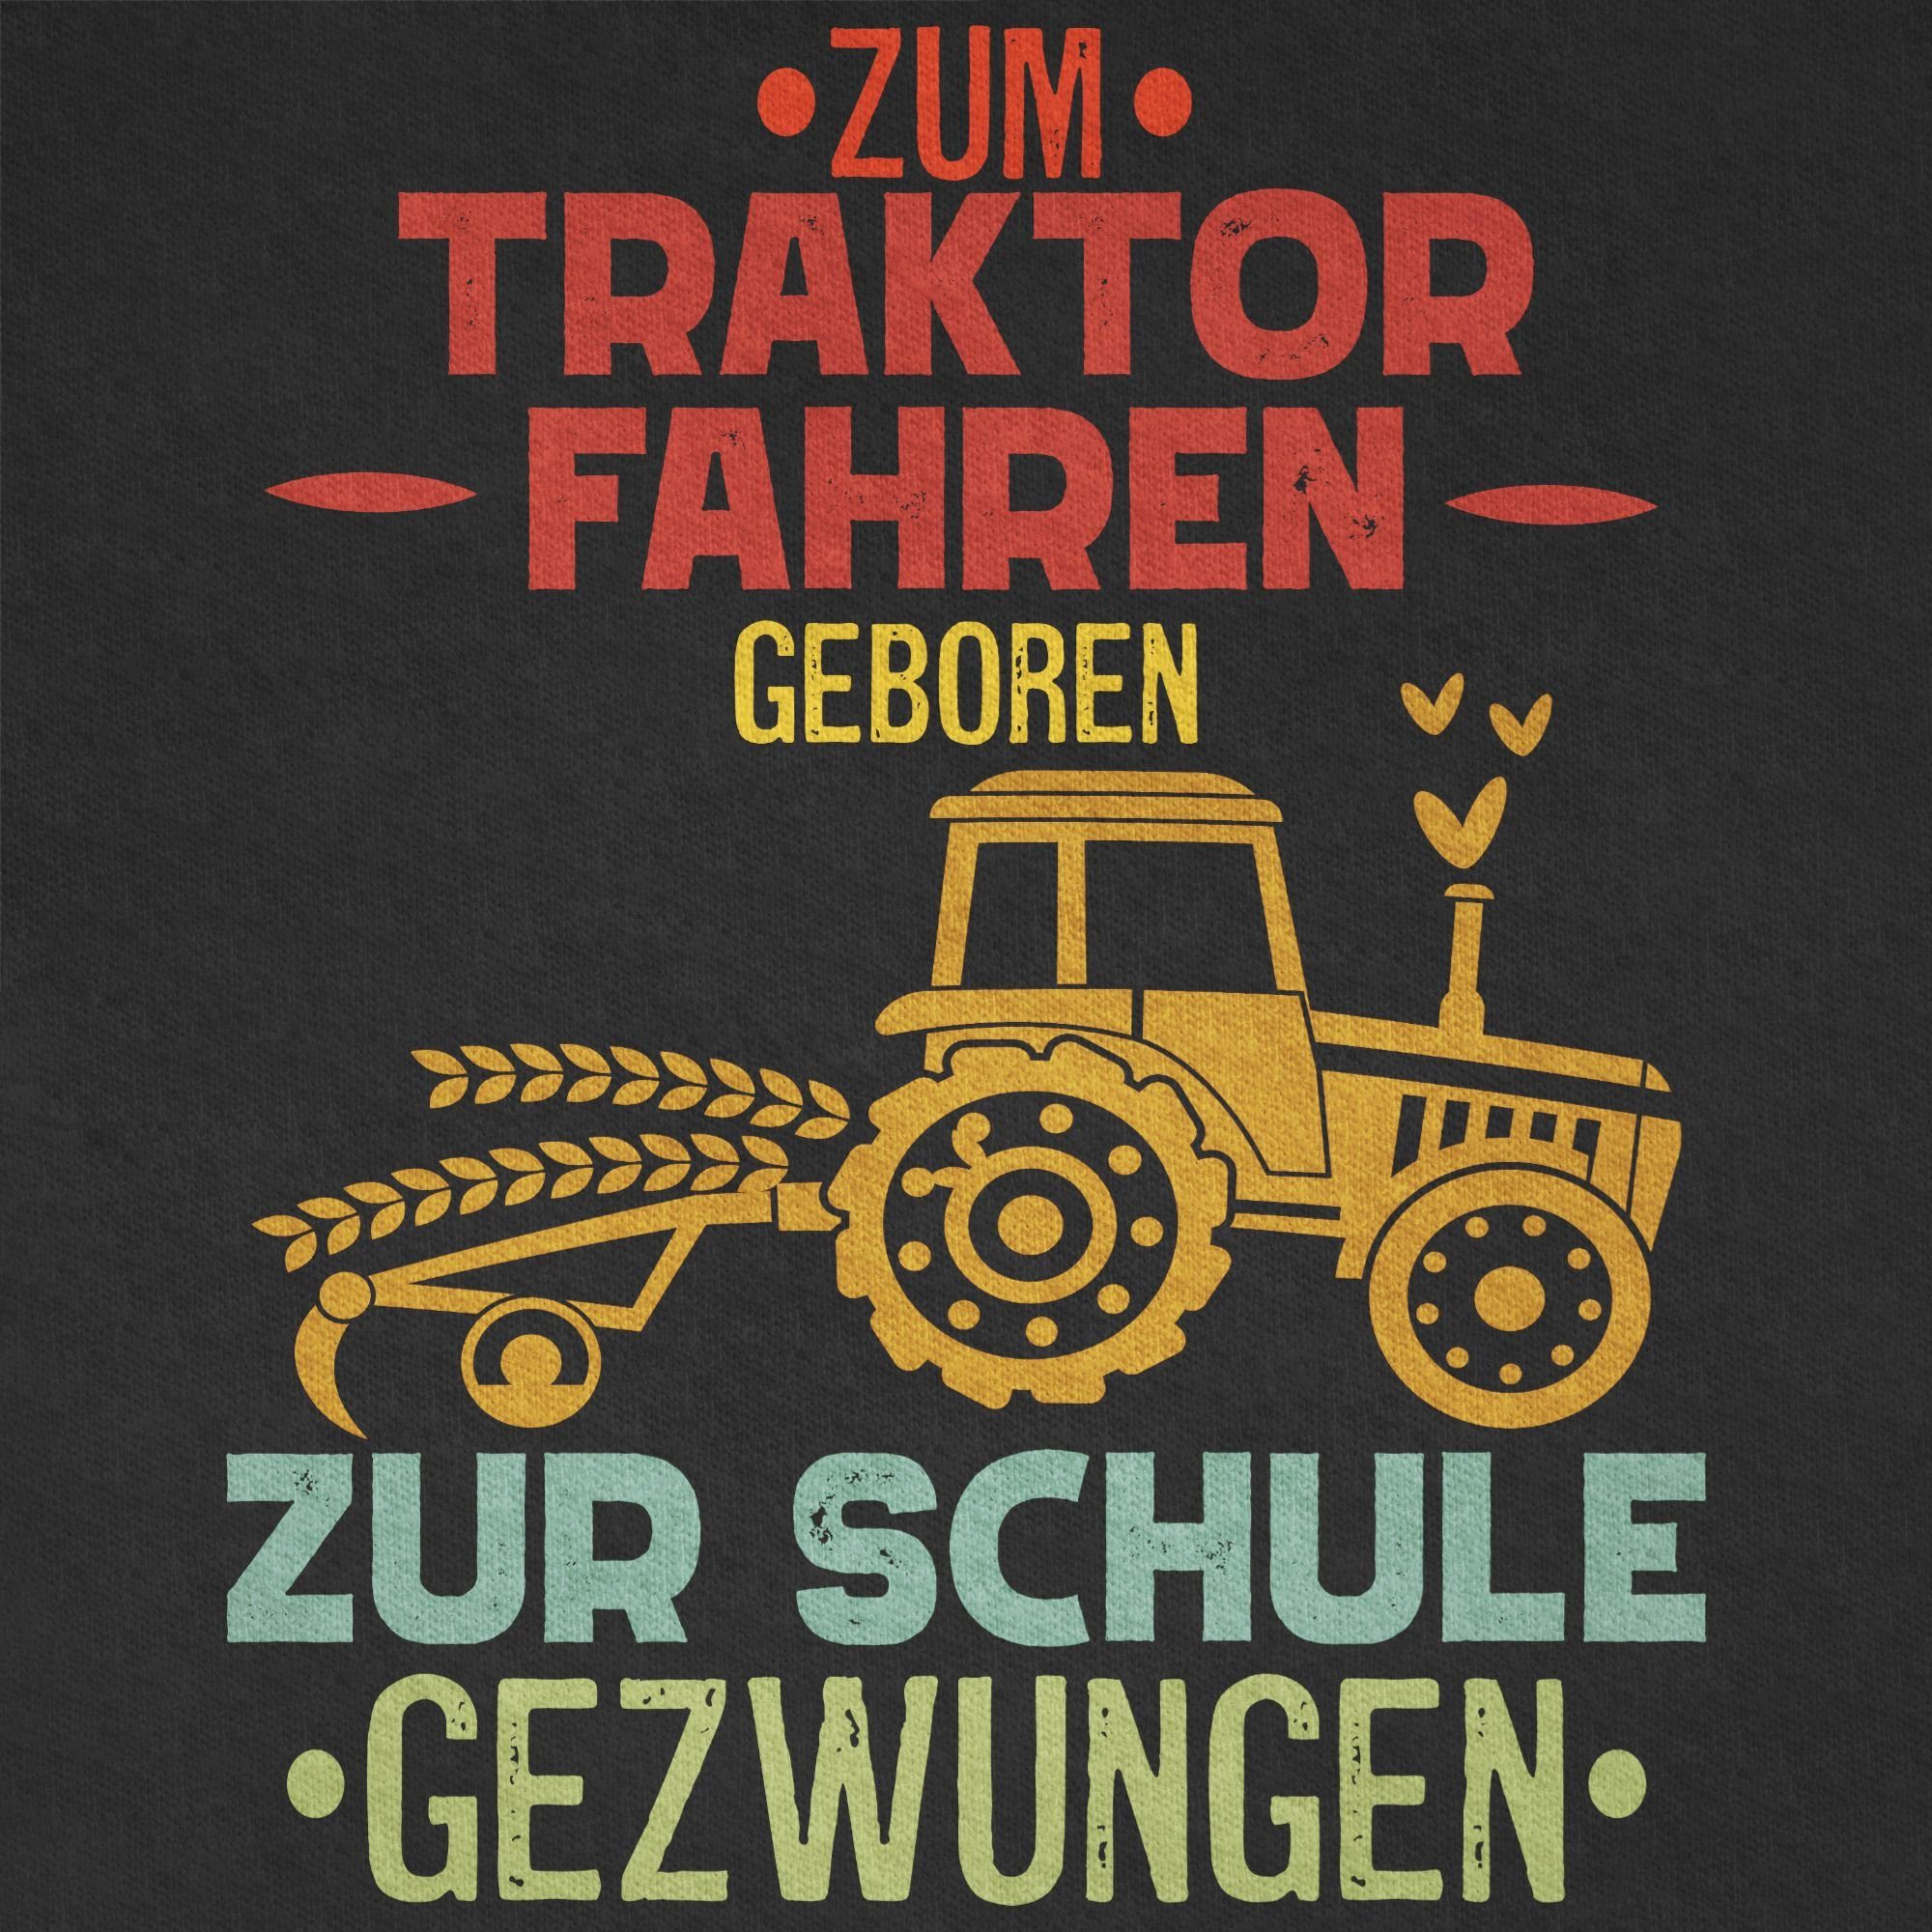 Schule 02 Einschulung Traktor Geschenke fahren Zum Shirtracer Schwarz T-Shirt Junge gezwungen Schulanfang Vintage geboren zur